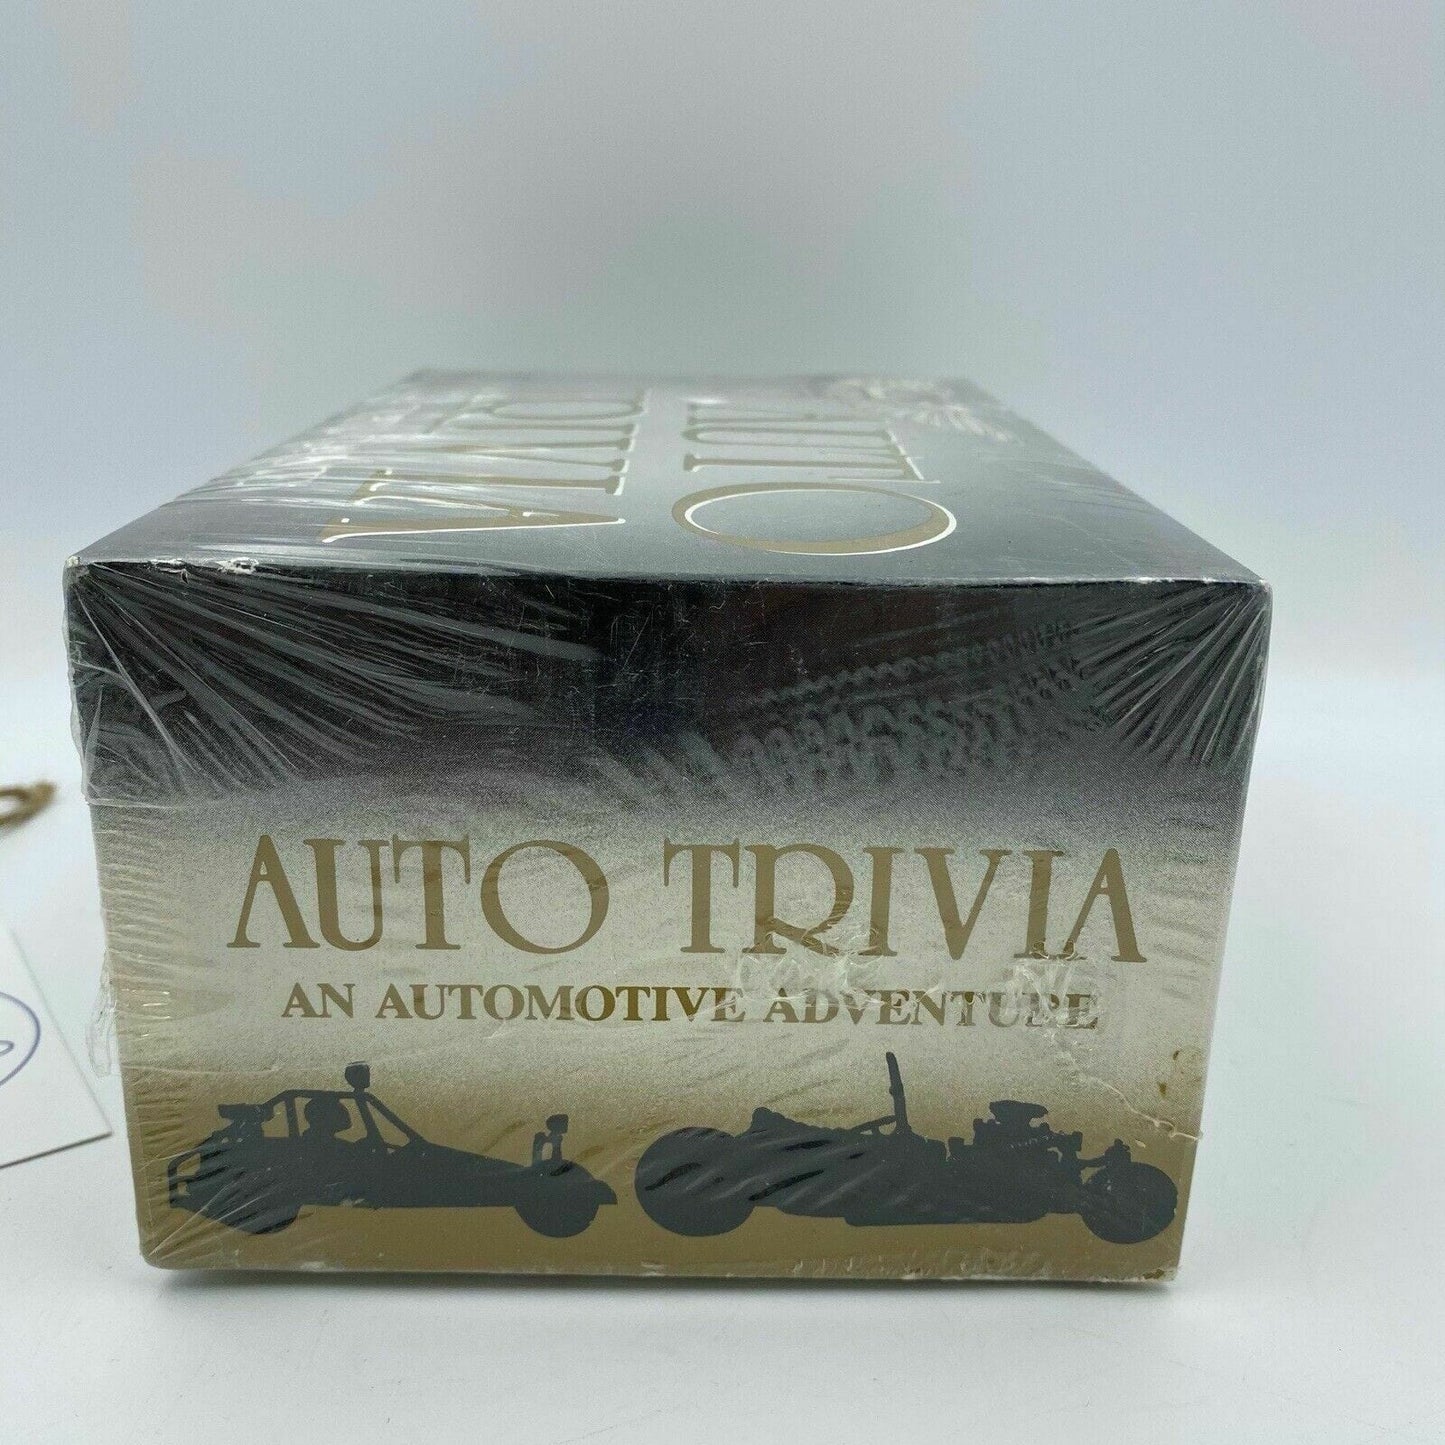 Vintage 1985 Auto Trivia Game Centennial Collector's Edition NIB